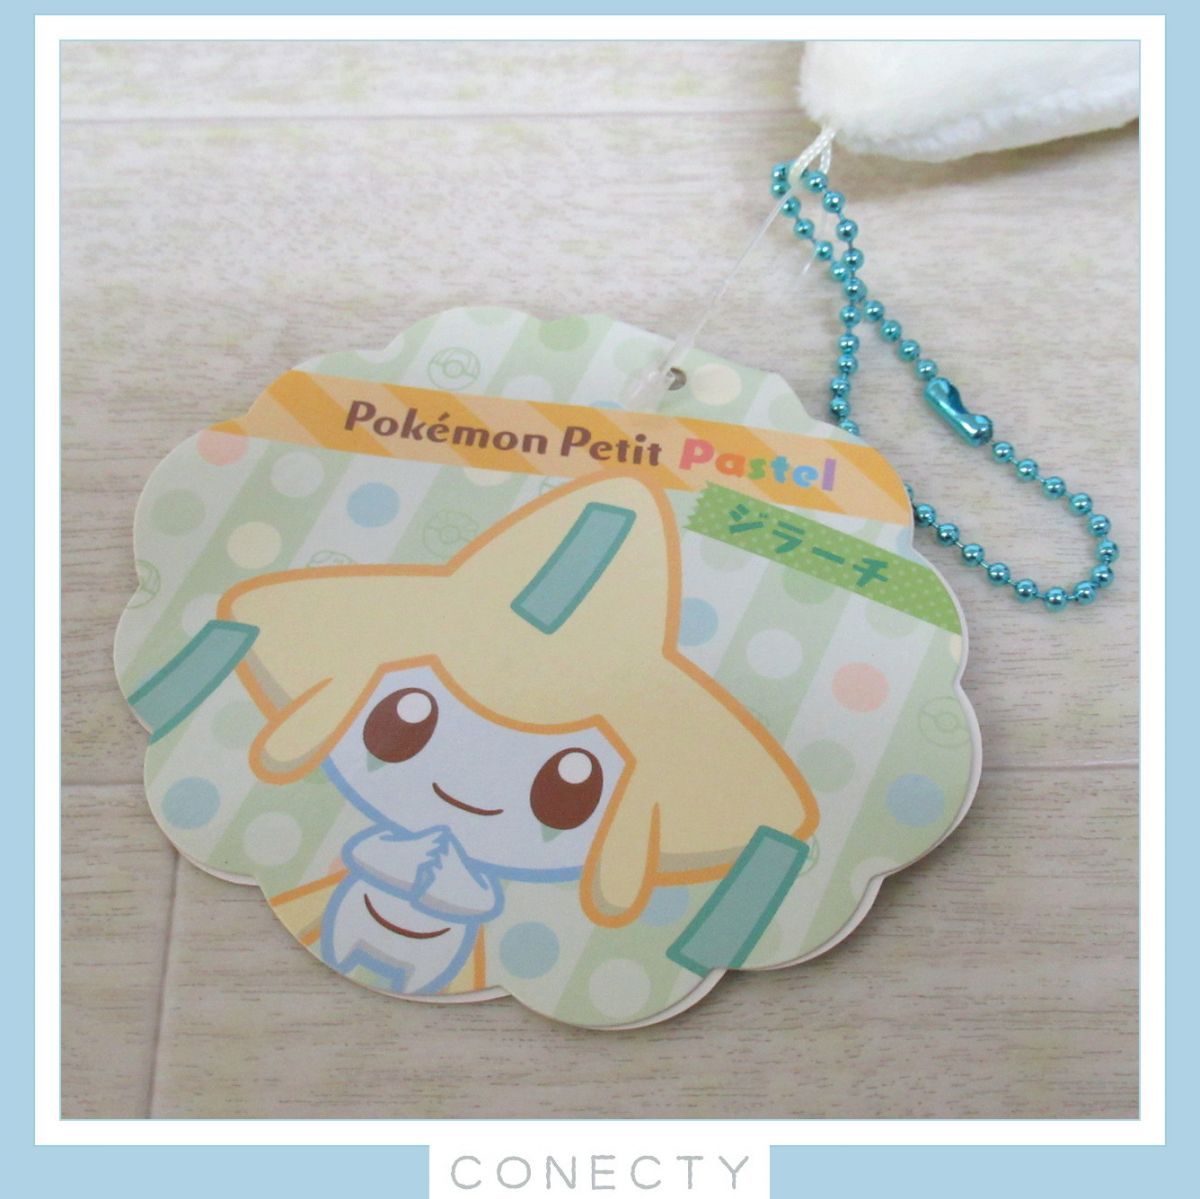 ポケモンセンター マスコット Pokemon Petit Pastel ジラーチ 2016年 